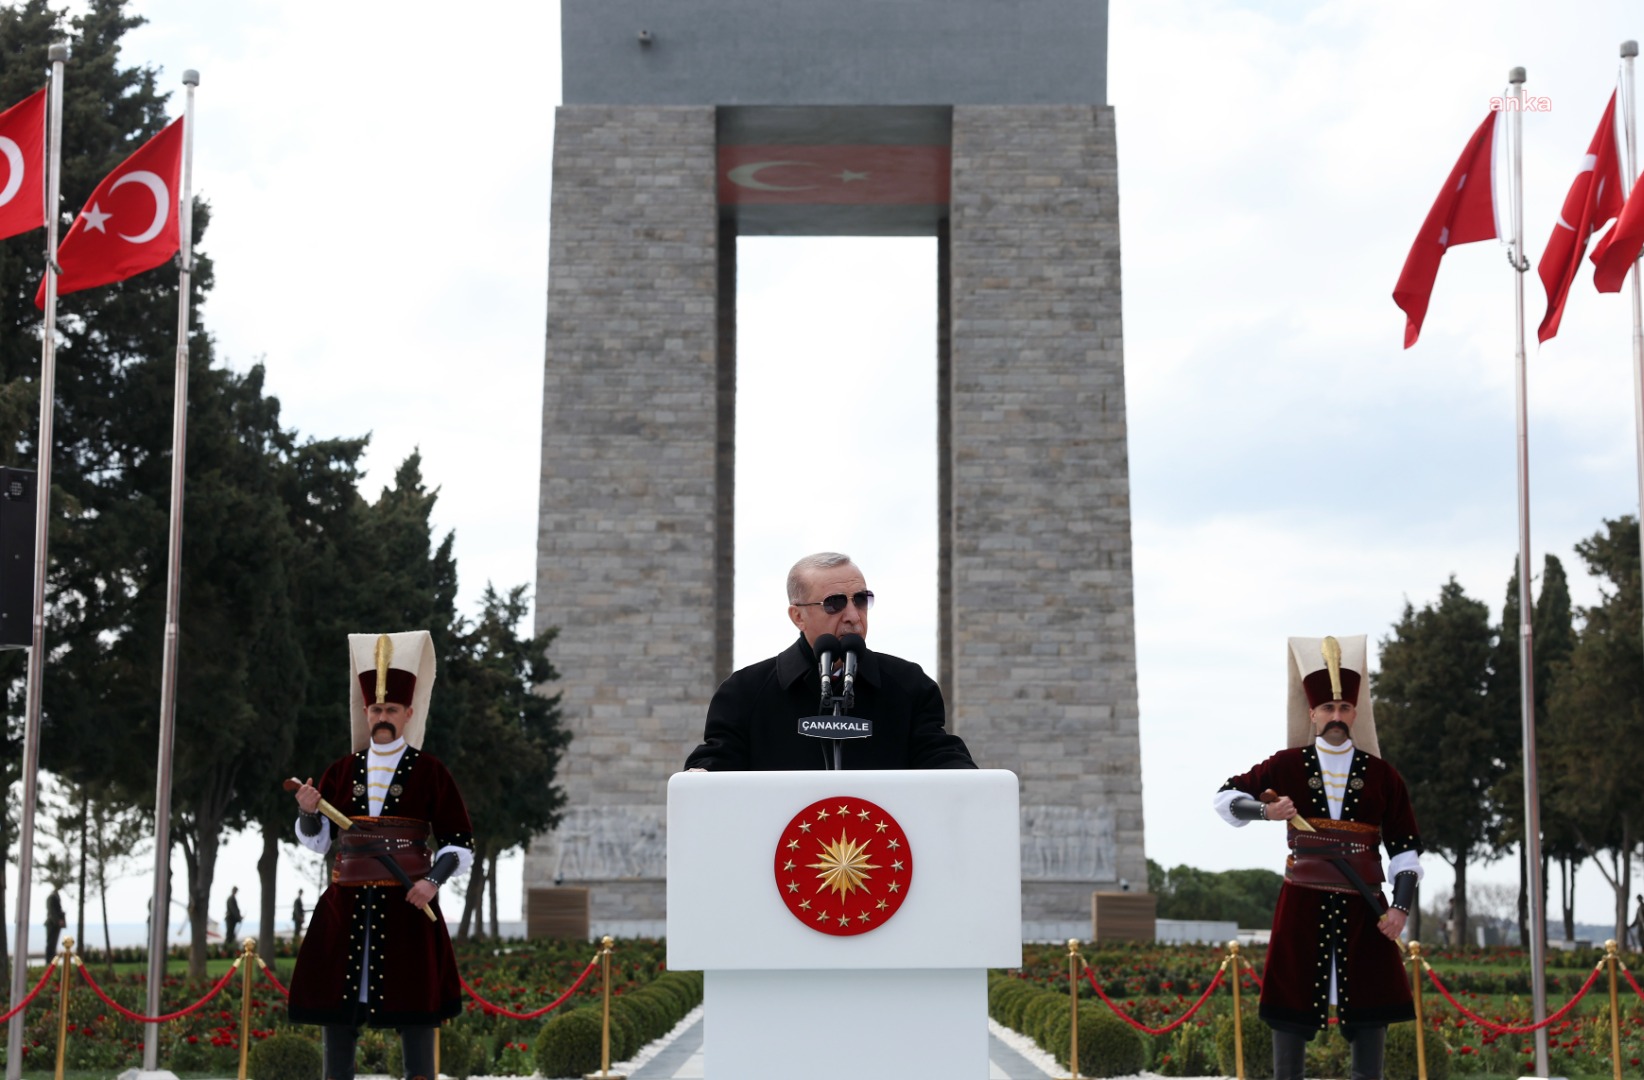 Erdoğan Çanakkale Zaferi kutlamalarında konuştu: Şeamet tellallarına fırsat vermeyelim